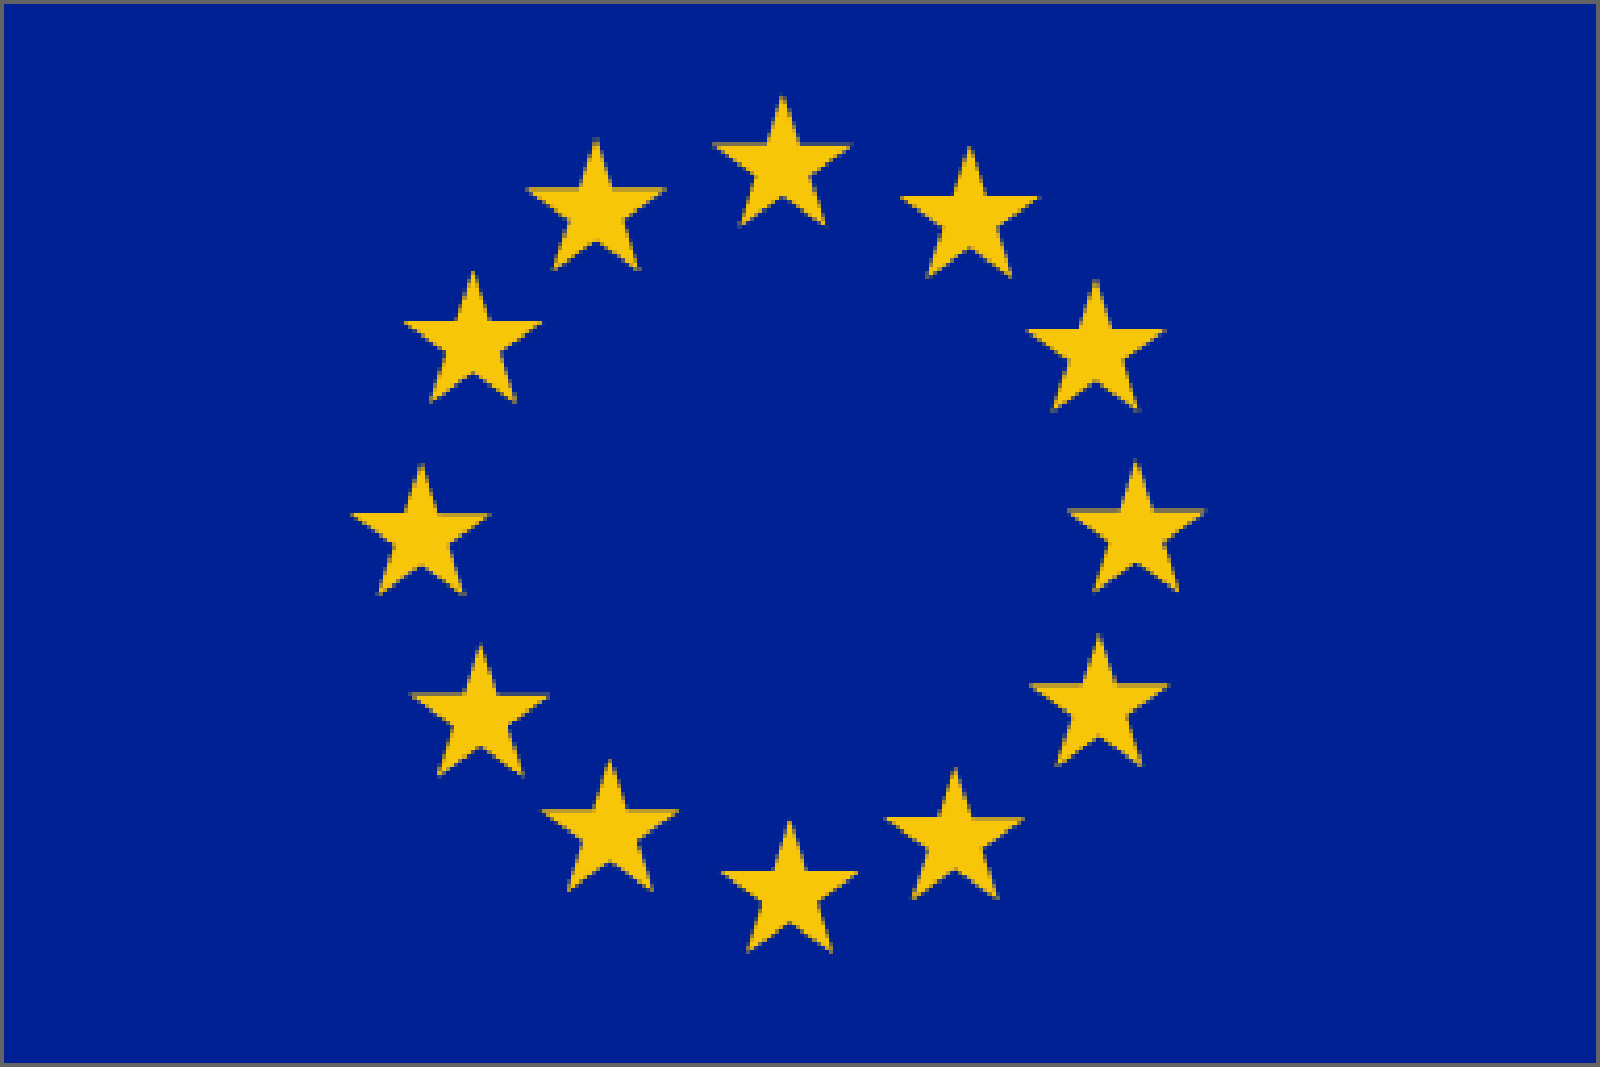 European Union Flags wallpaper, Misc, HQ European Union Flags pictureK Wallpaper 2019